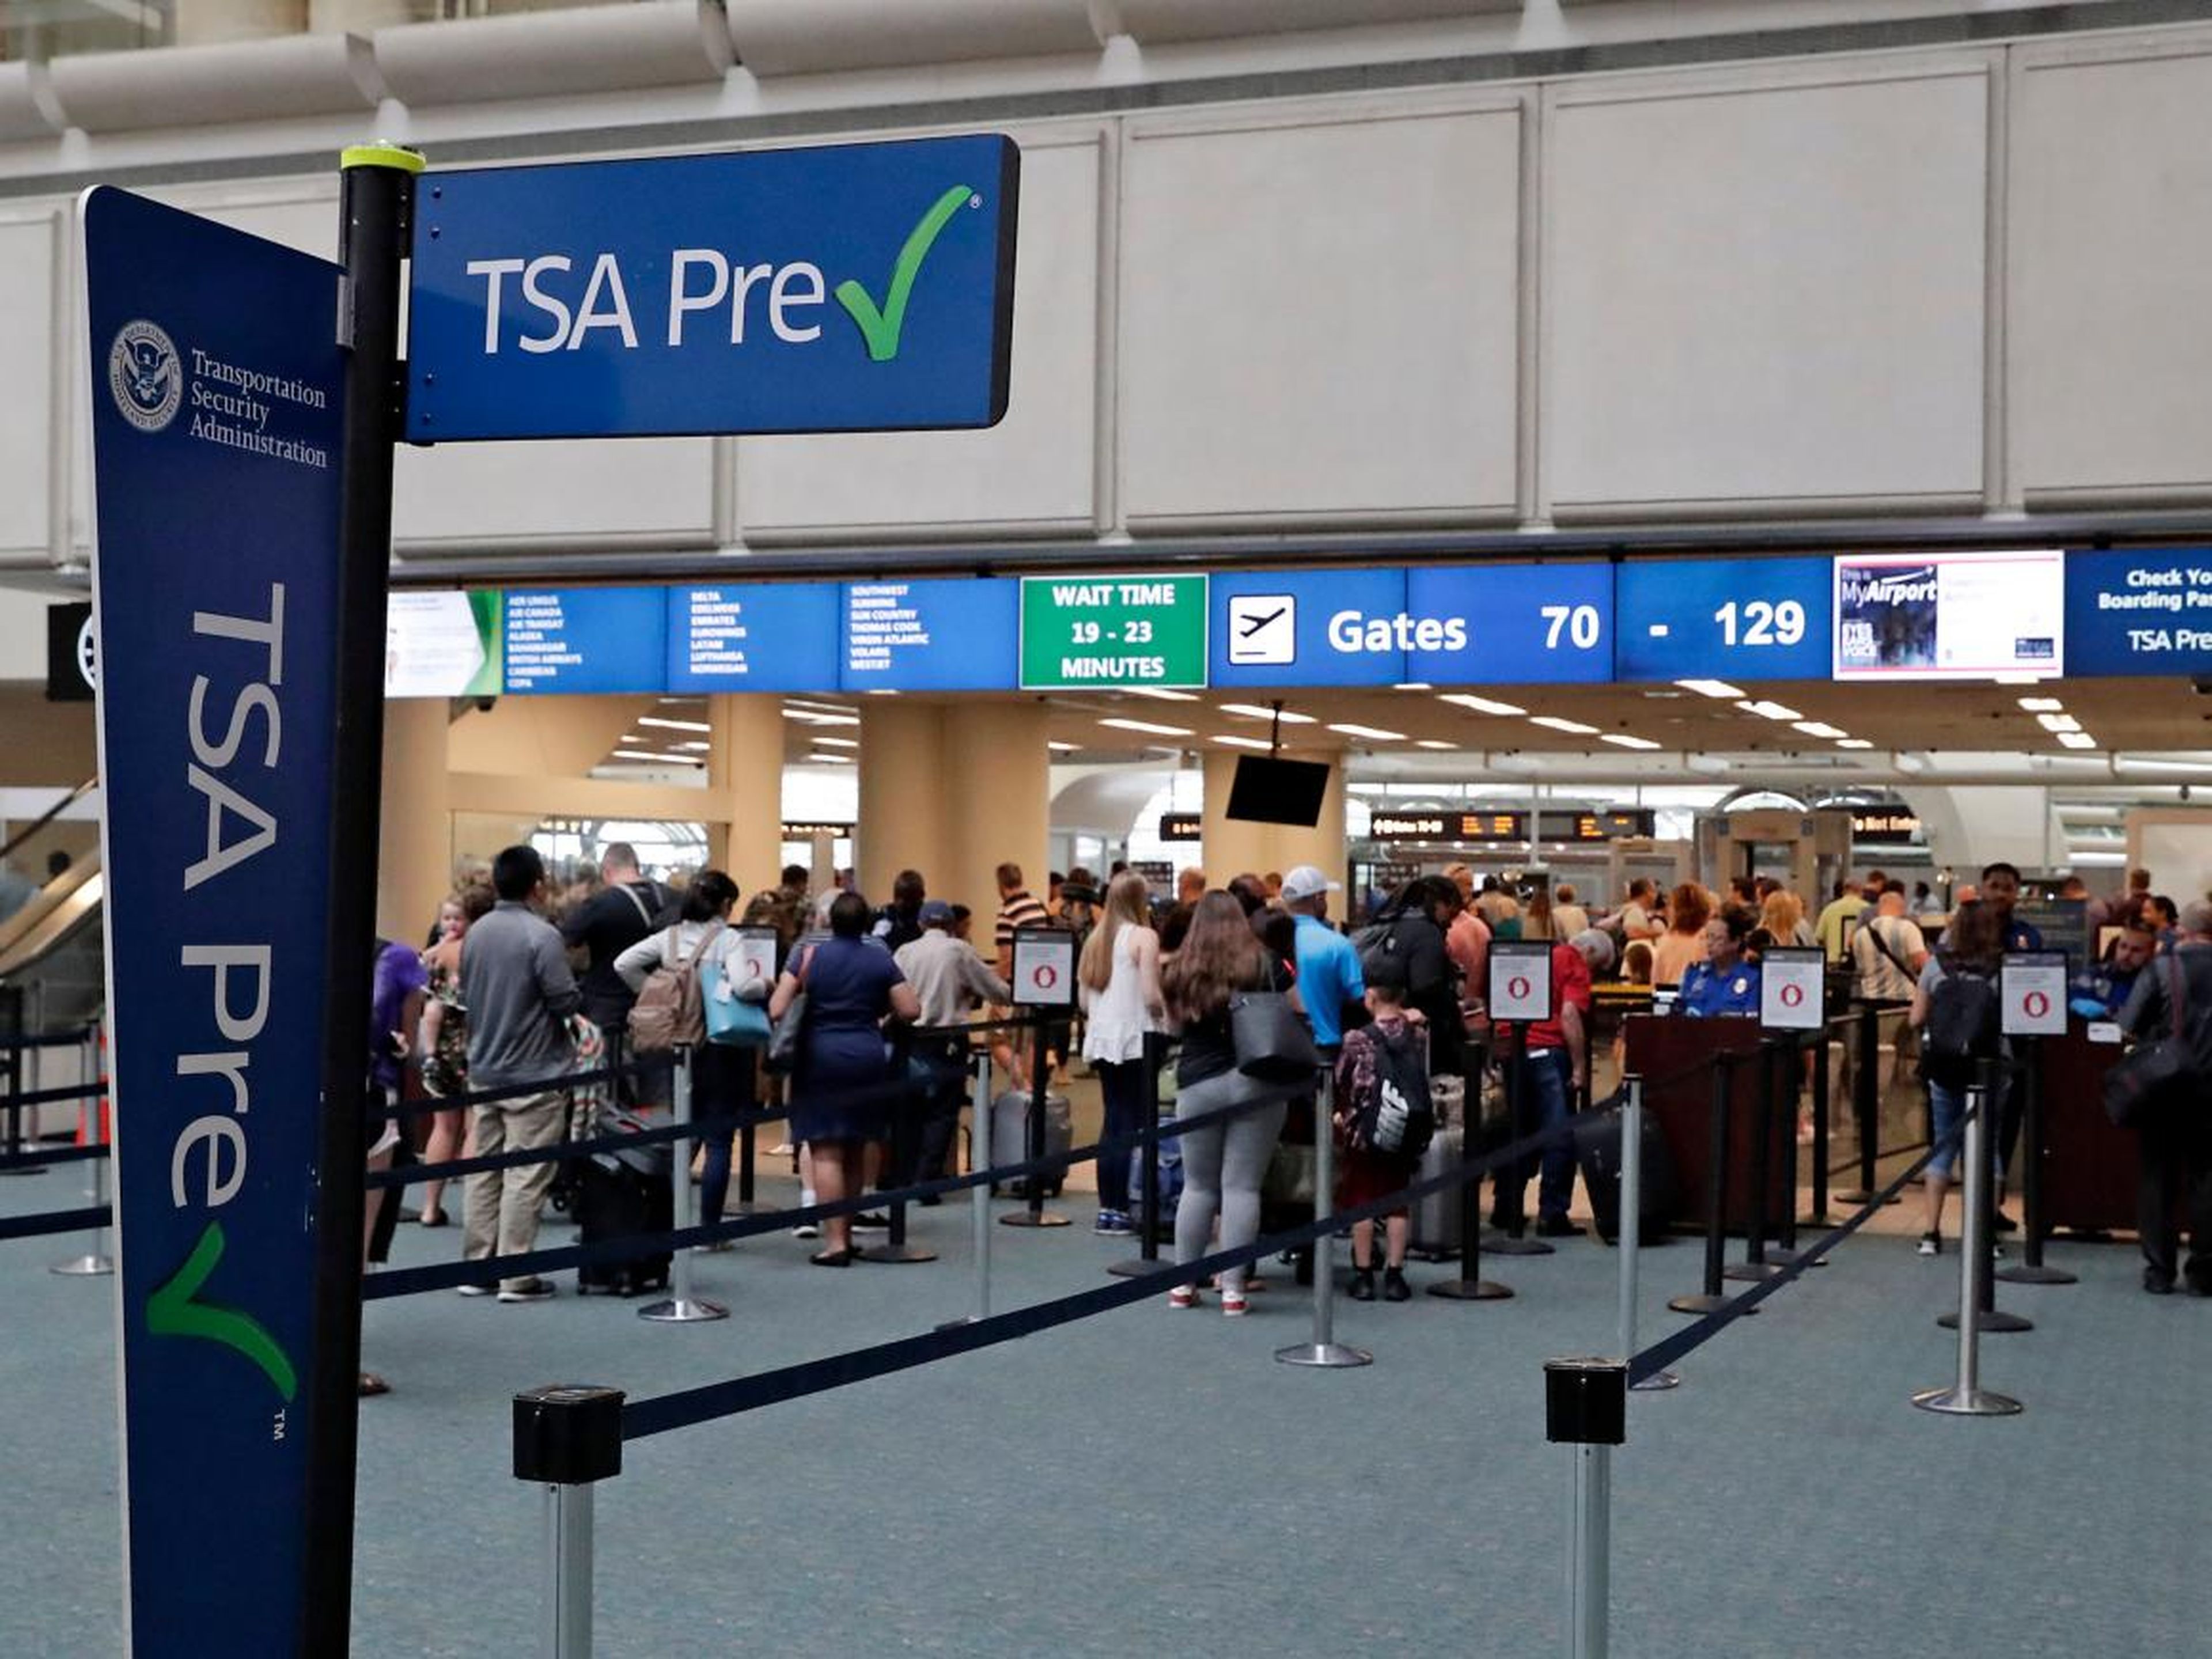 Aduana de la TSA en el aeropuerto internacional de Orlando, Estados Unidos.